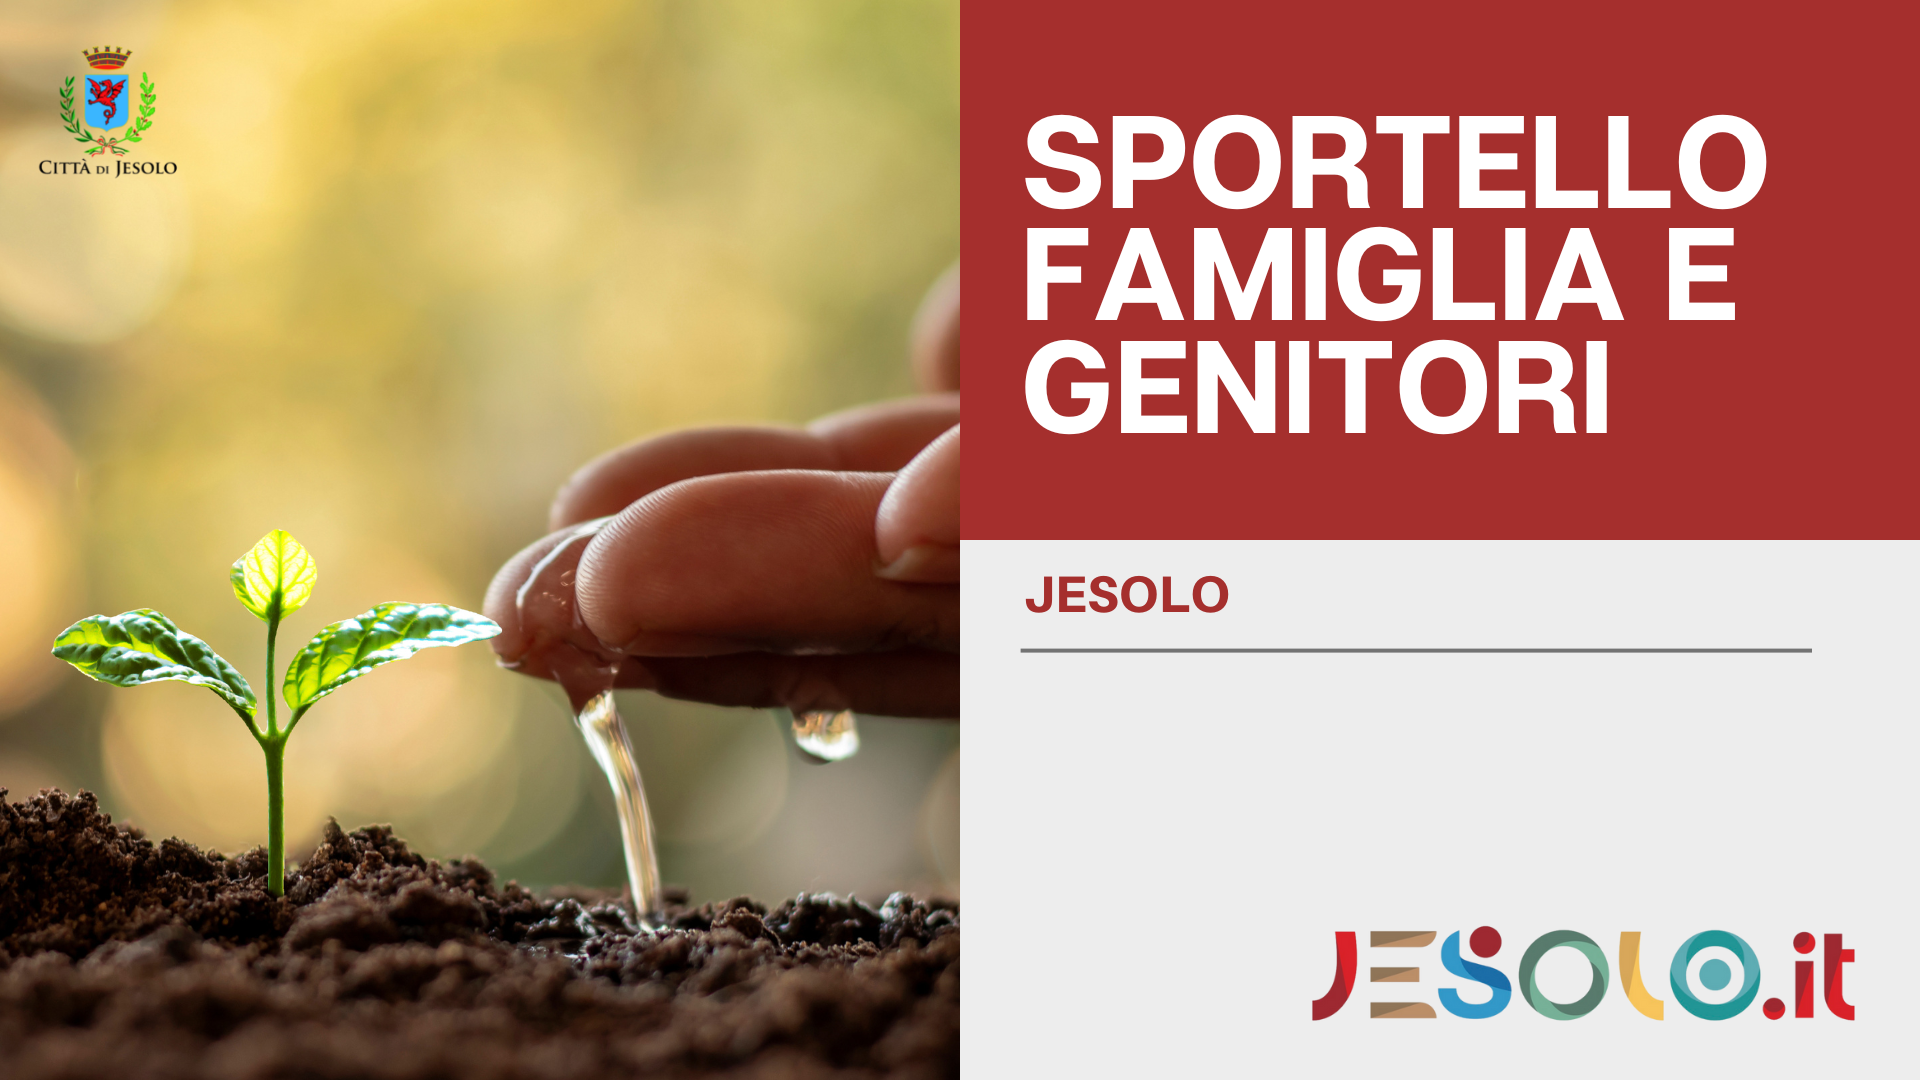 Sportello famiglia e genitori - Jesolo - Immagine germoglio e mano che innaffia 